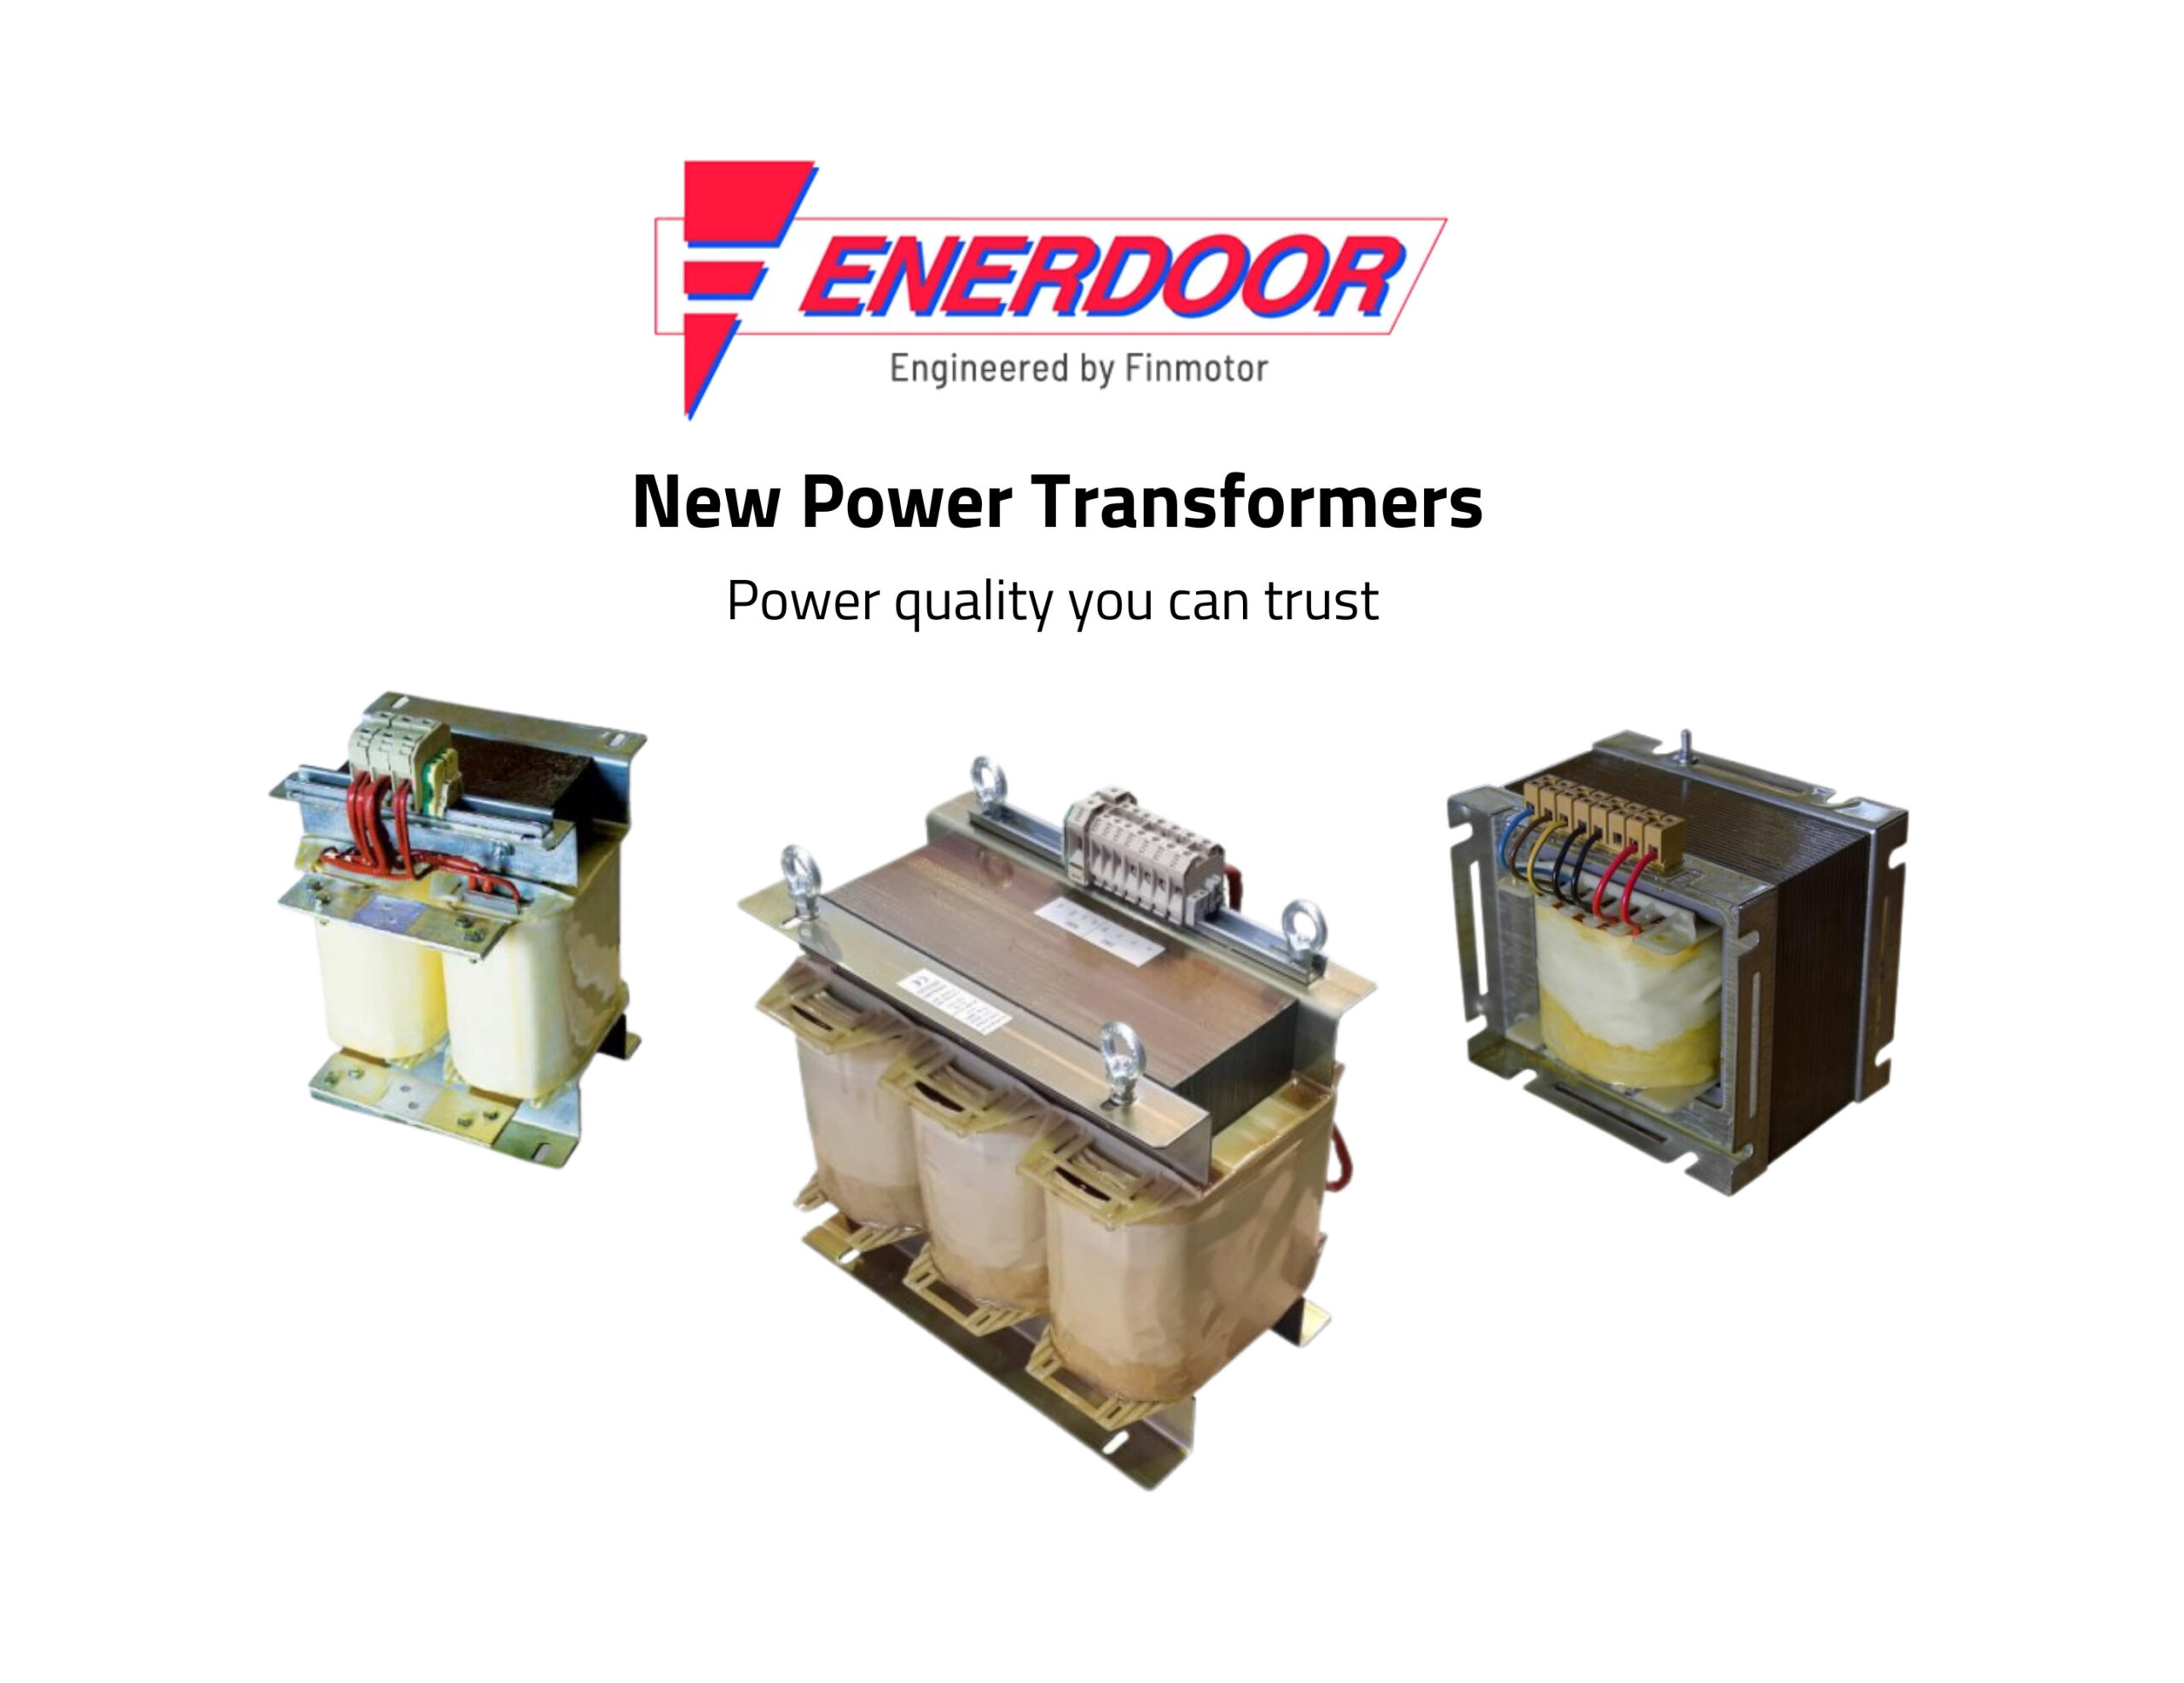 Enerdoor's new power transformers